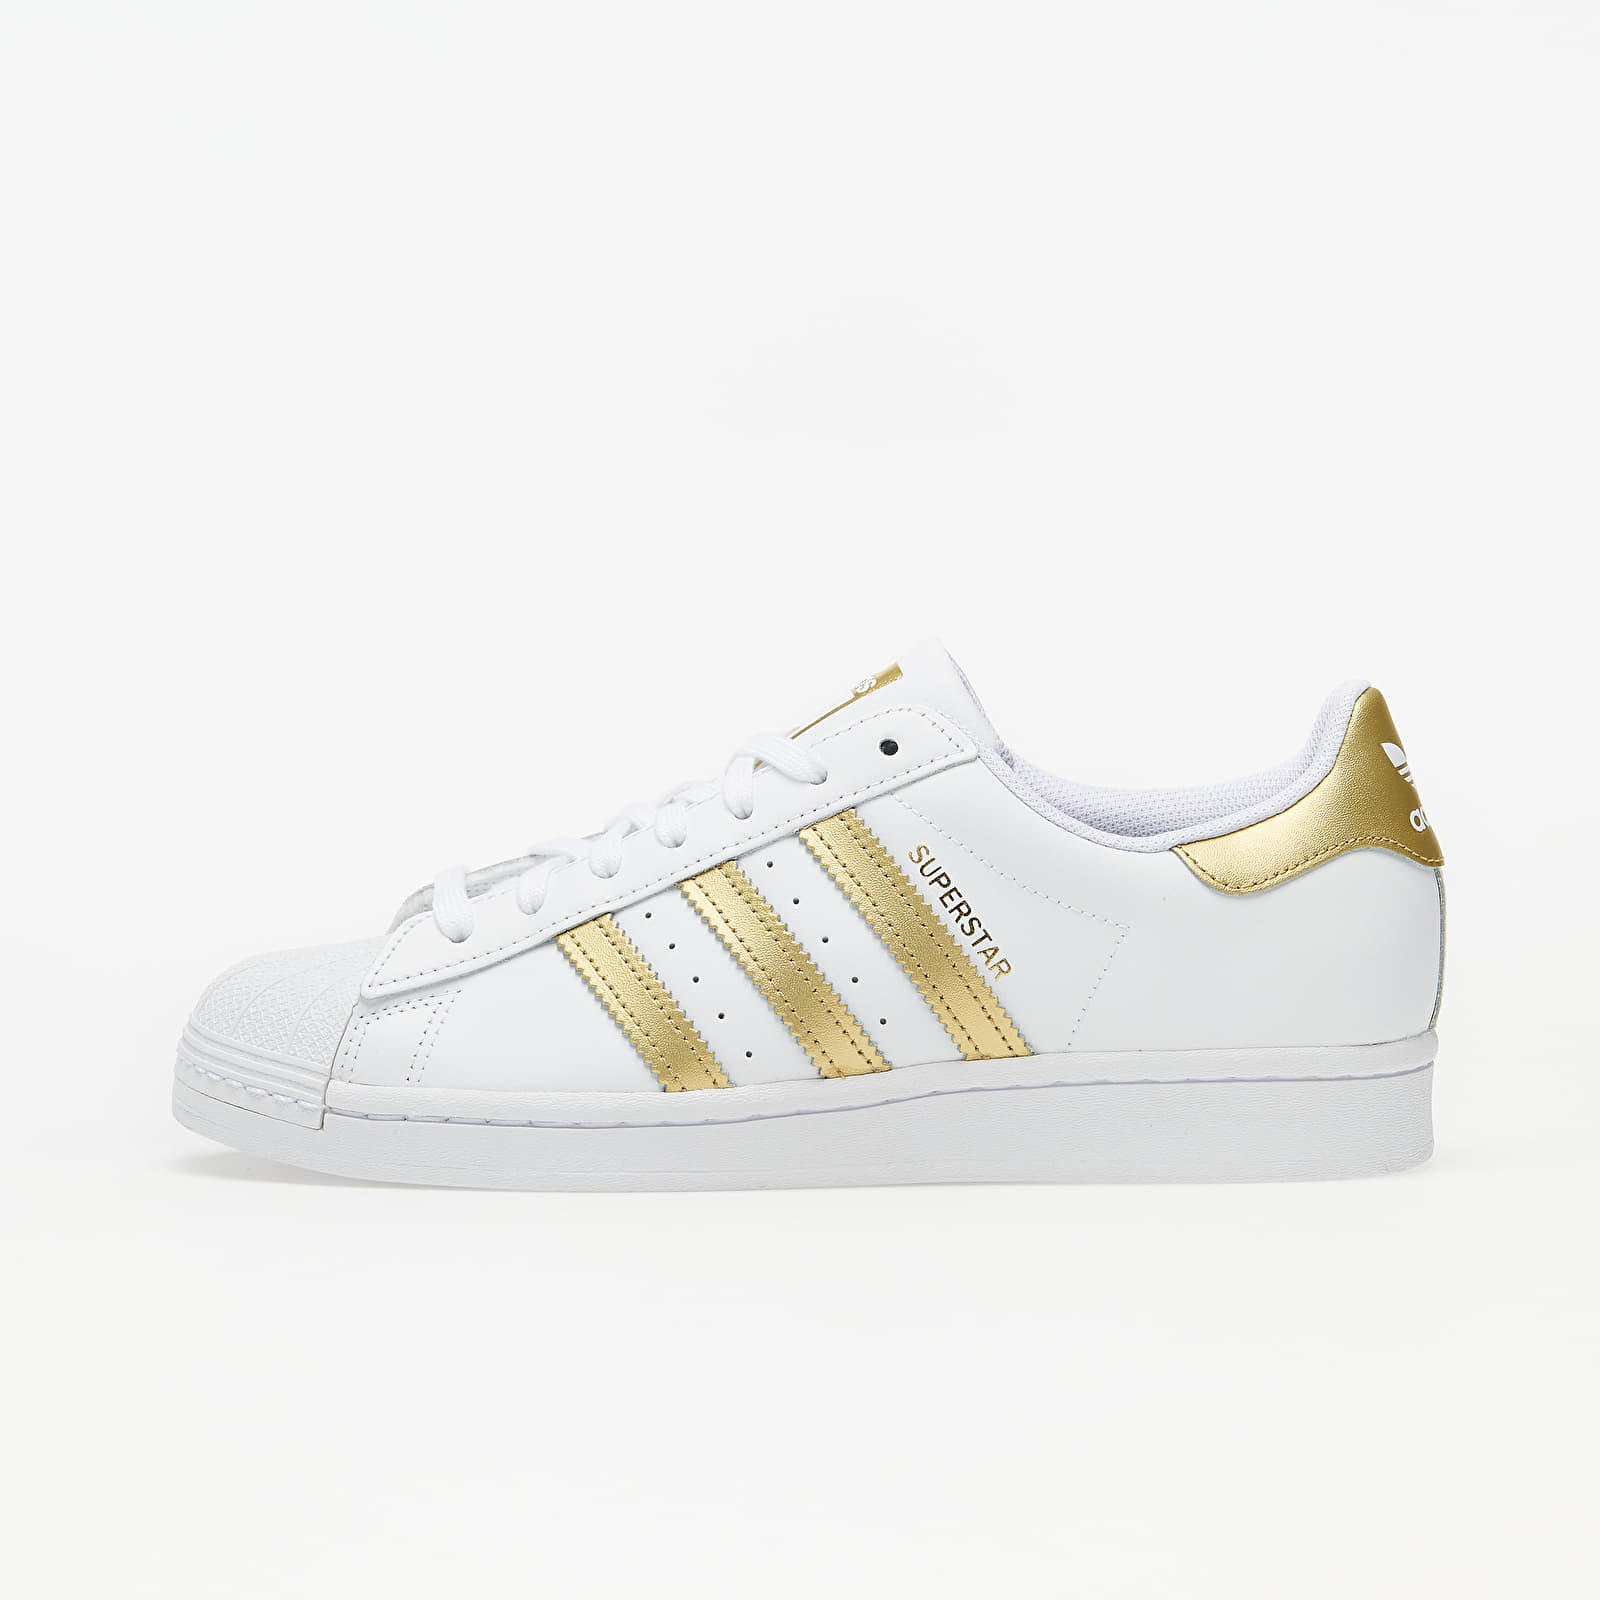 Damen Sneaker und Schuhe adidas Superstar W Ftw White/ Gold Metalic/ Ftw White